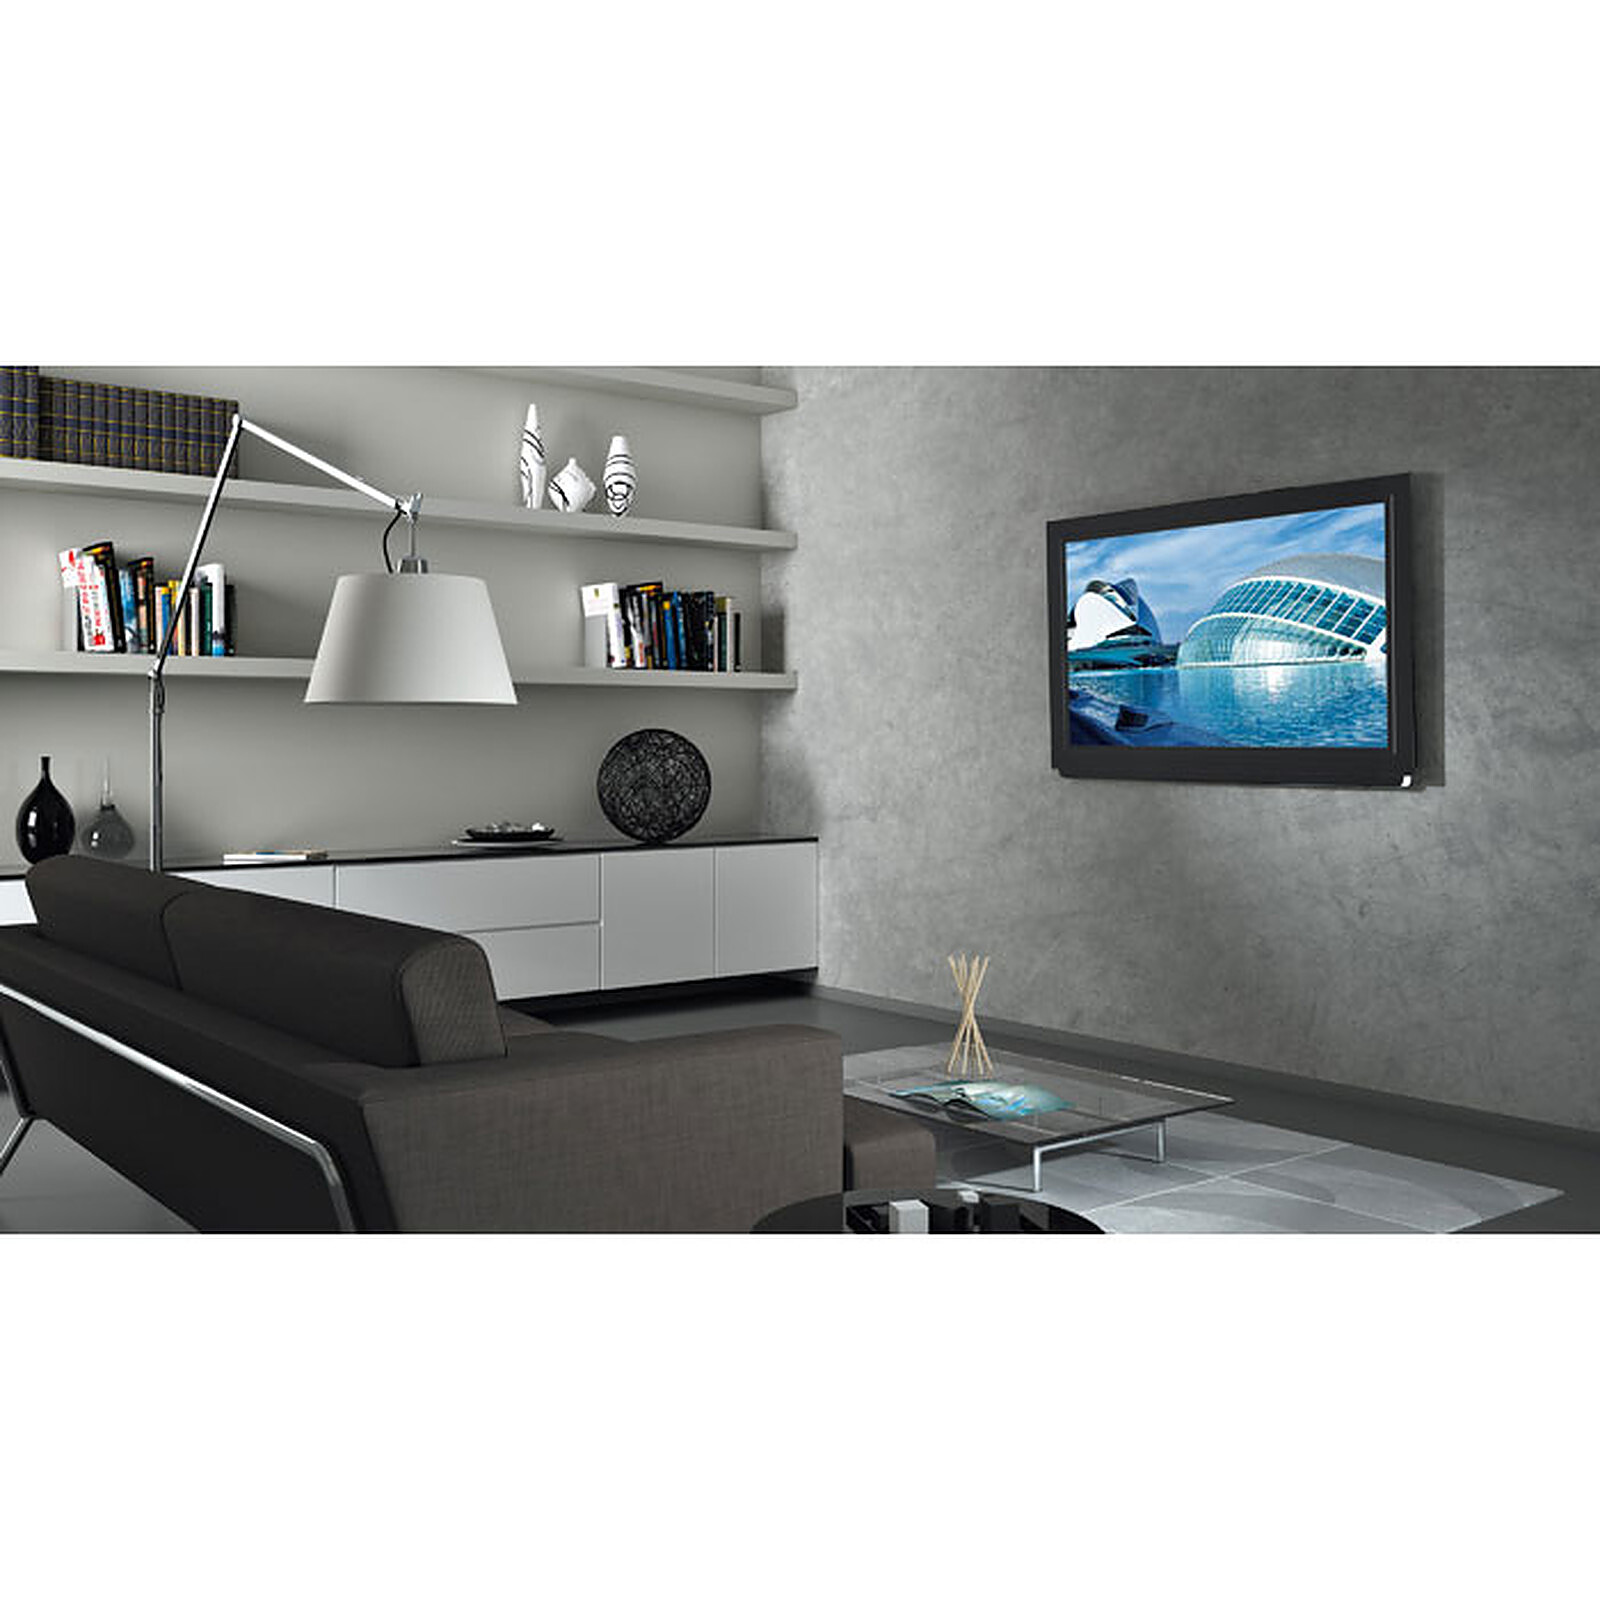 Vogel's Comfort TVM 3605 - Support mural TV - Garantie 3 ans LDLC